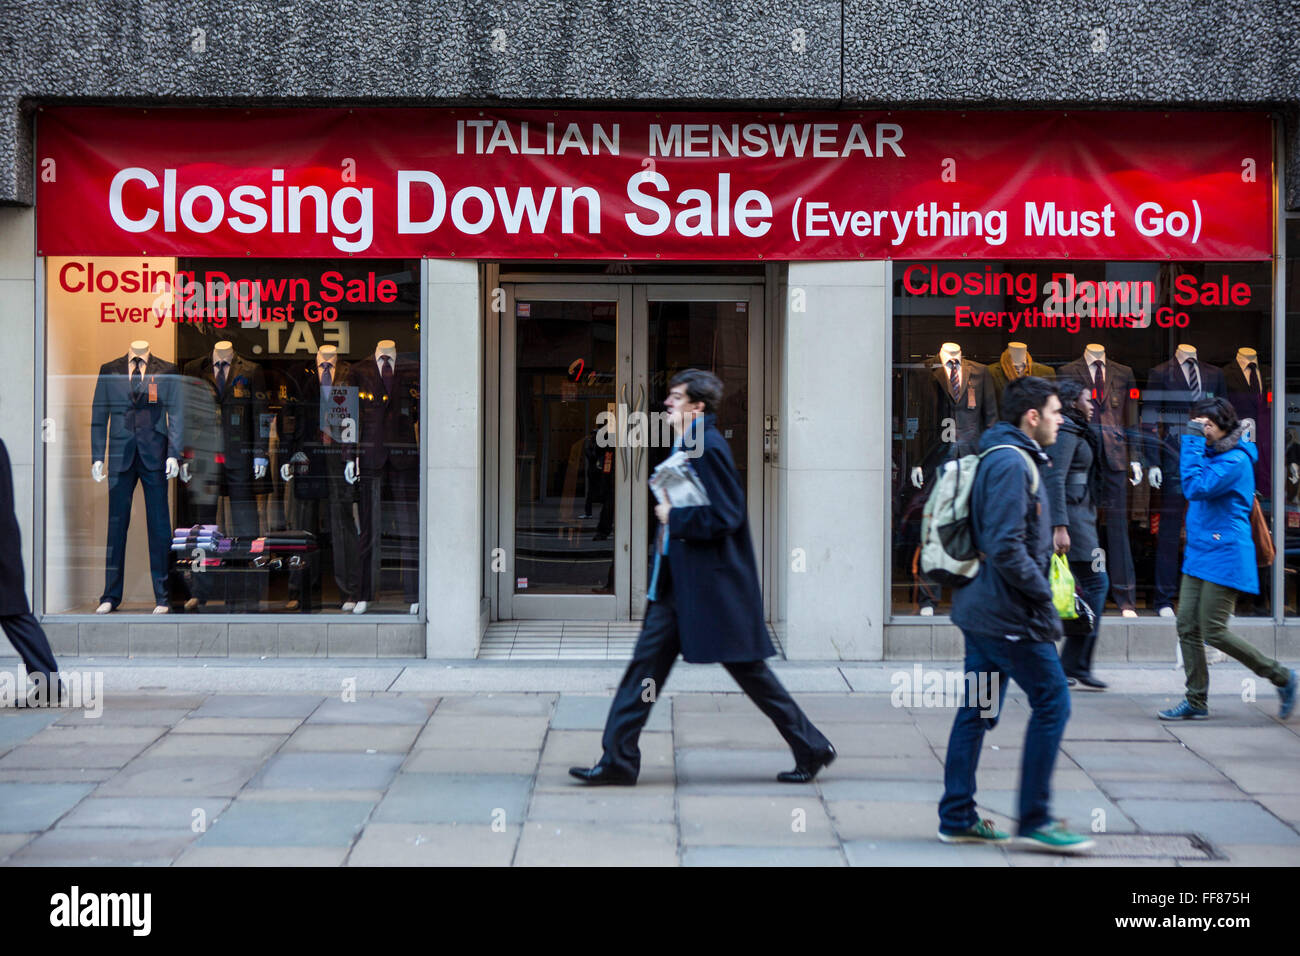 Eine italienische Herrenmode Einzelhandel speichern hosting ein schließen auf Verkauf in Moorgate, zentrales London, Vereinigtes Königreich. Viele Einzelhandelsgeschäfte haben schlecht während der Finanzkrise gelitten und mussten schließen. Stockfoto